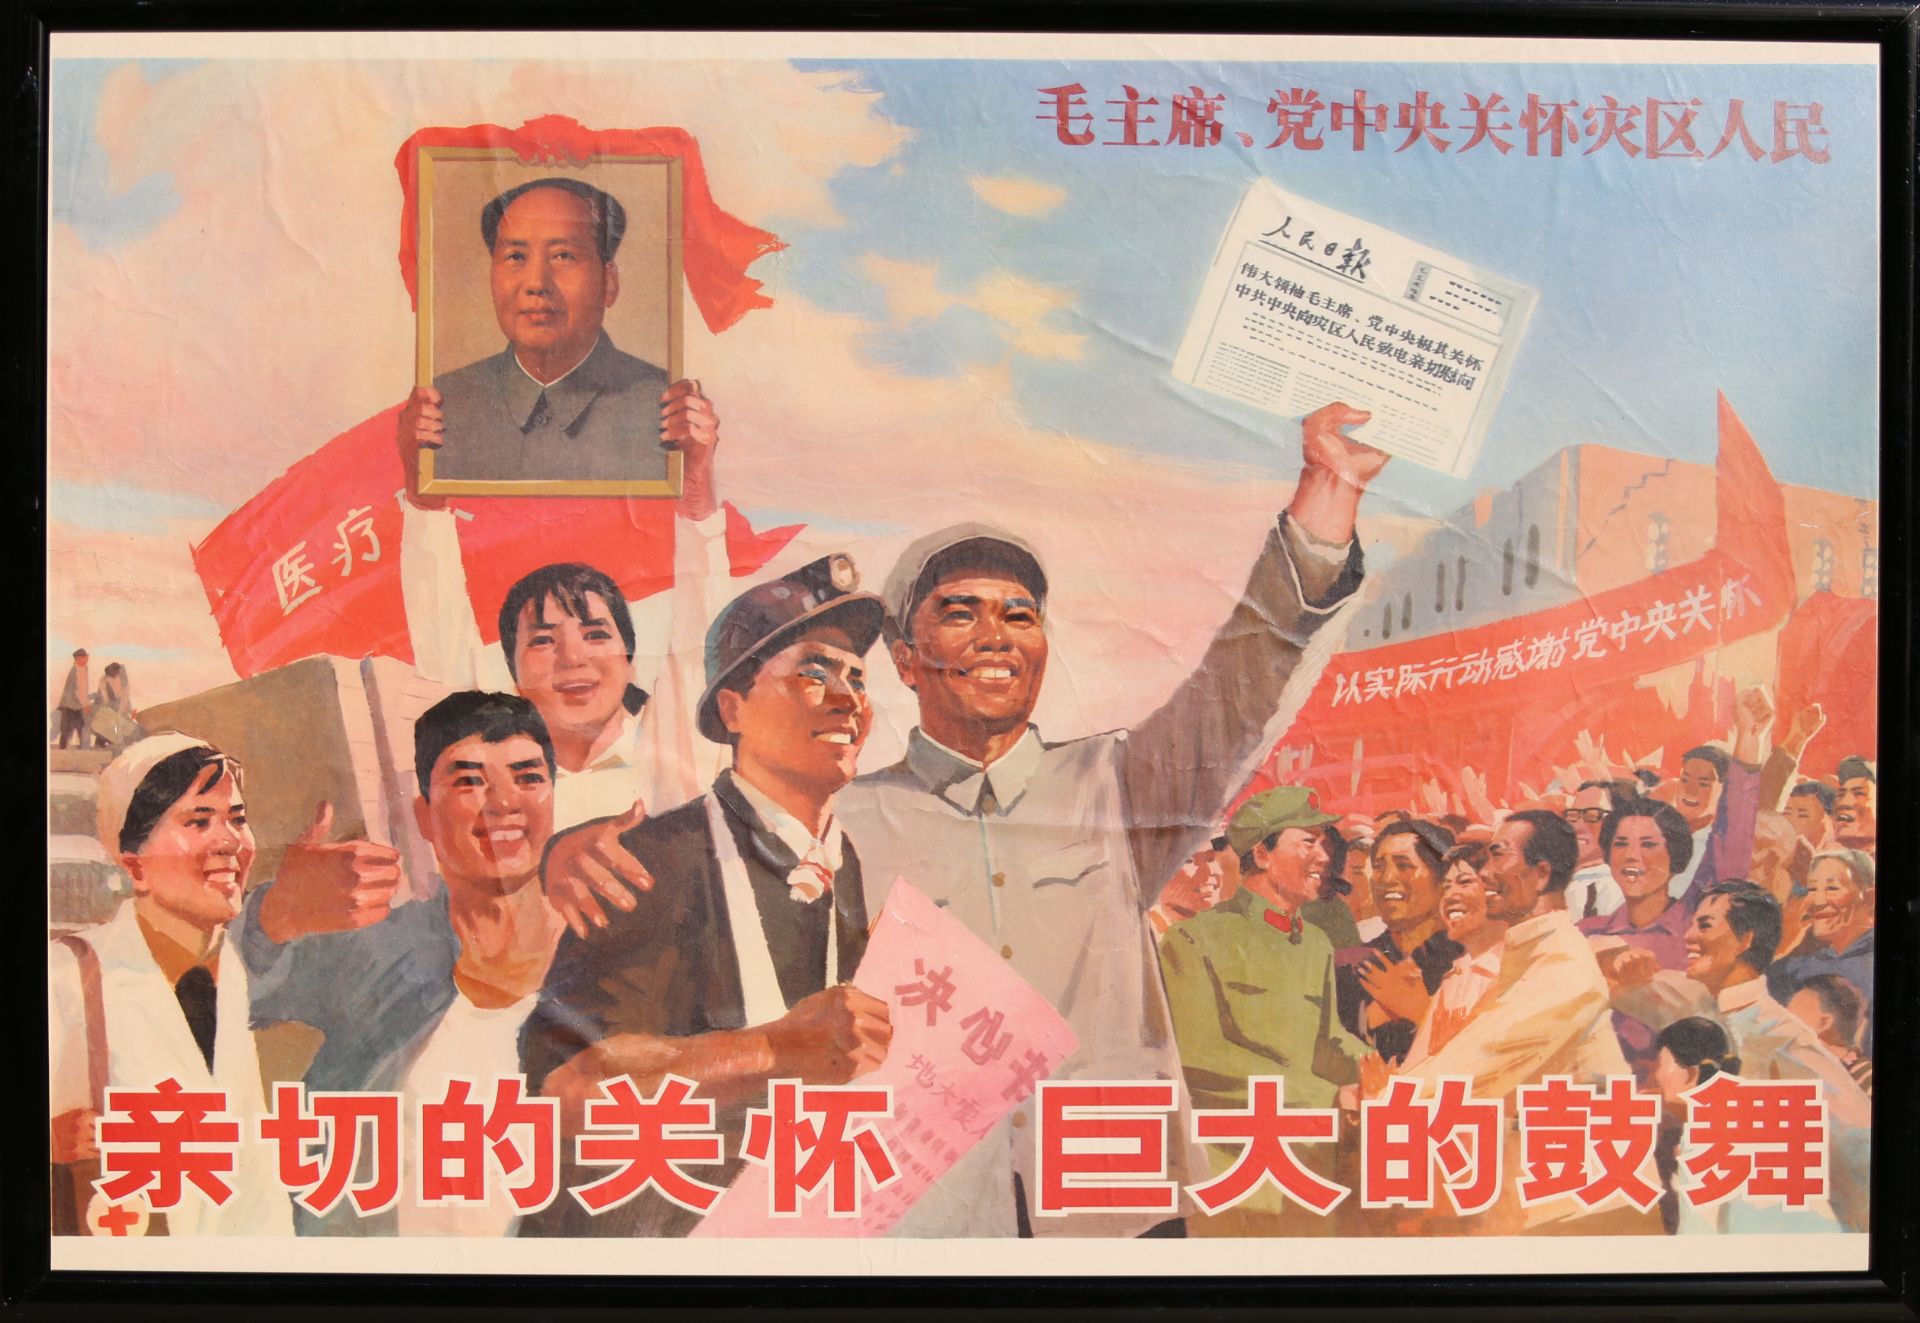 17 Affiches de propagande de la révolution culturelle chinoise Encadrée 75cm x 52cm - Bild 10 aus 17